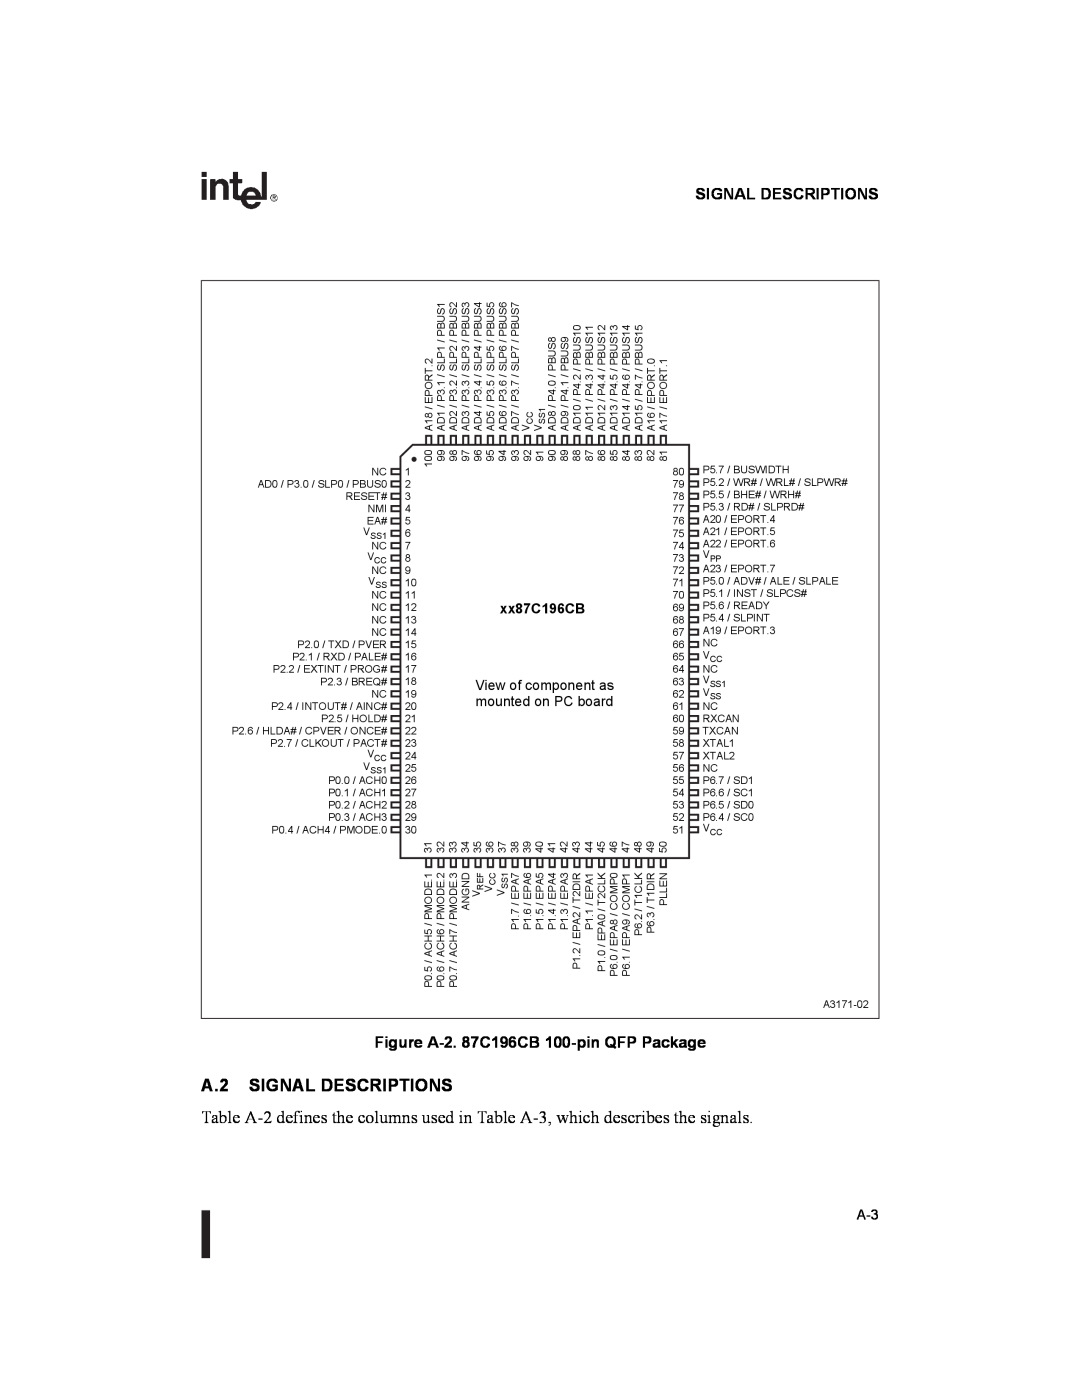 Intel 8XC196NT A.2 SIGNAL DESCRIPTIONS, Signal Descriptions, Figure A-2. 87C196CB 100-pin QFP Package, xx87C196CB 